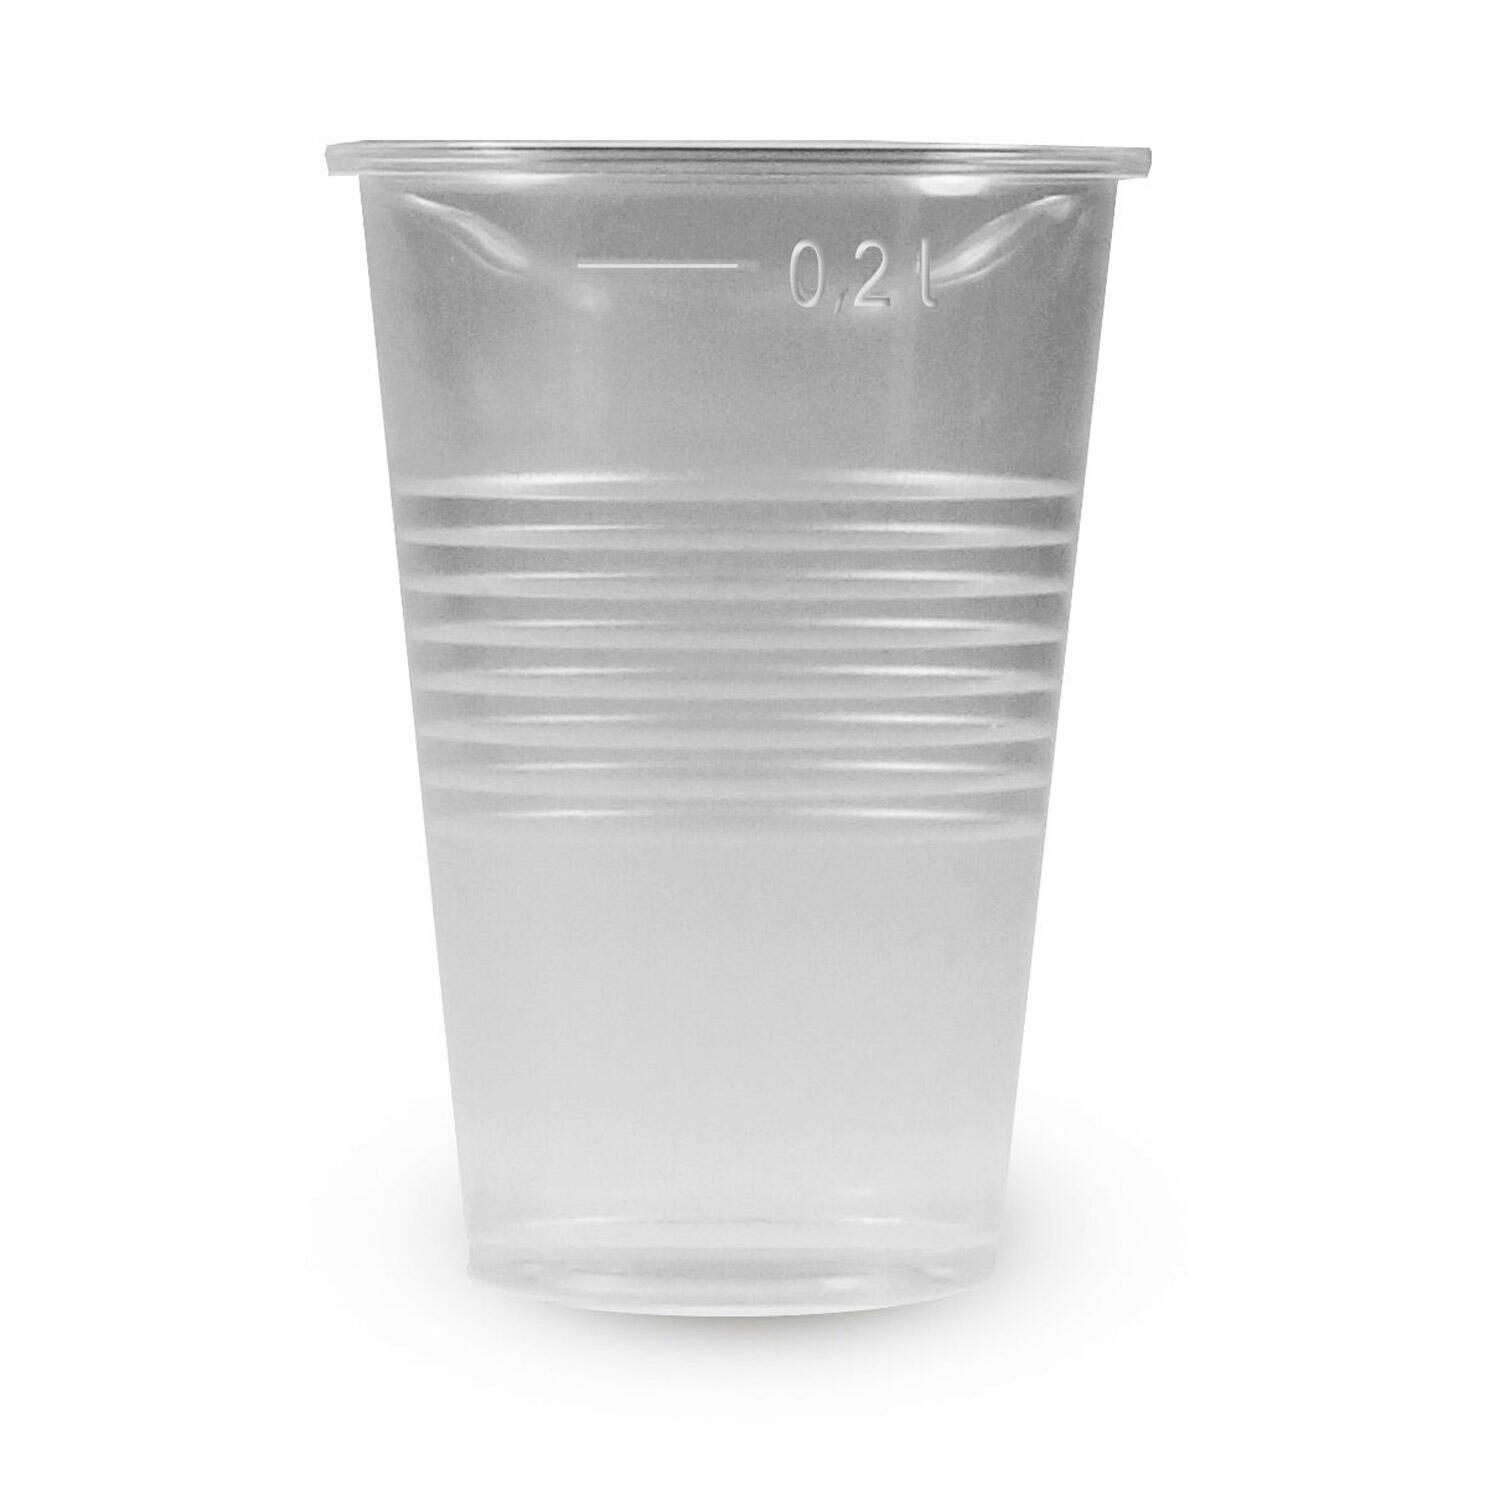 Trinkbecher transparent klar mit Eichstrich 0,2 l, 200 ml, PP,  15 Stk.